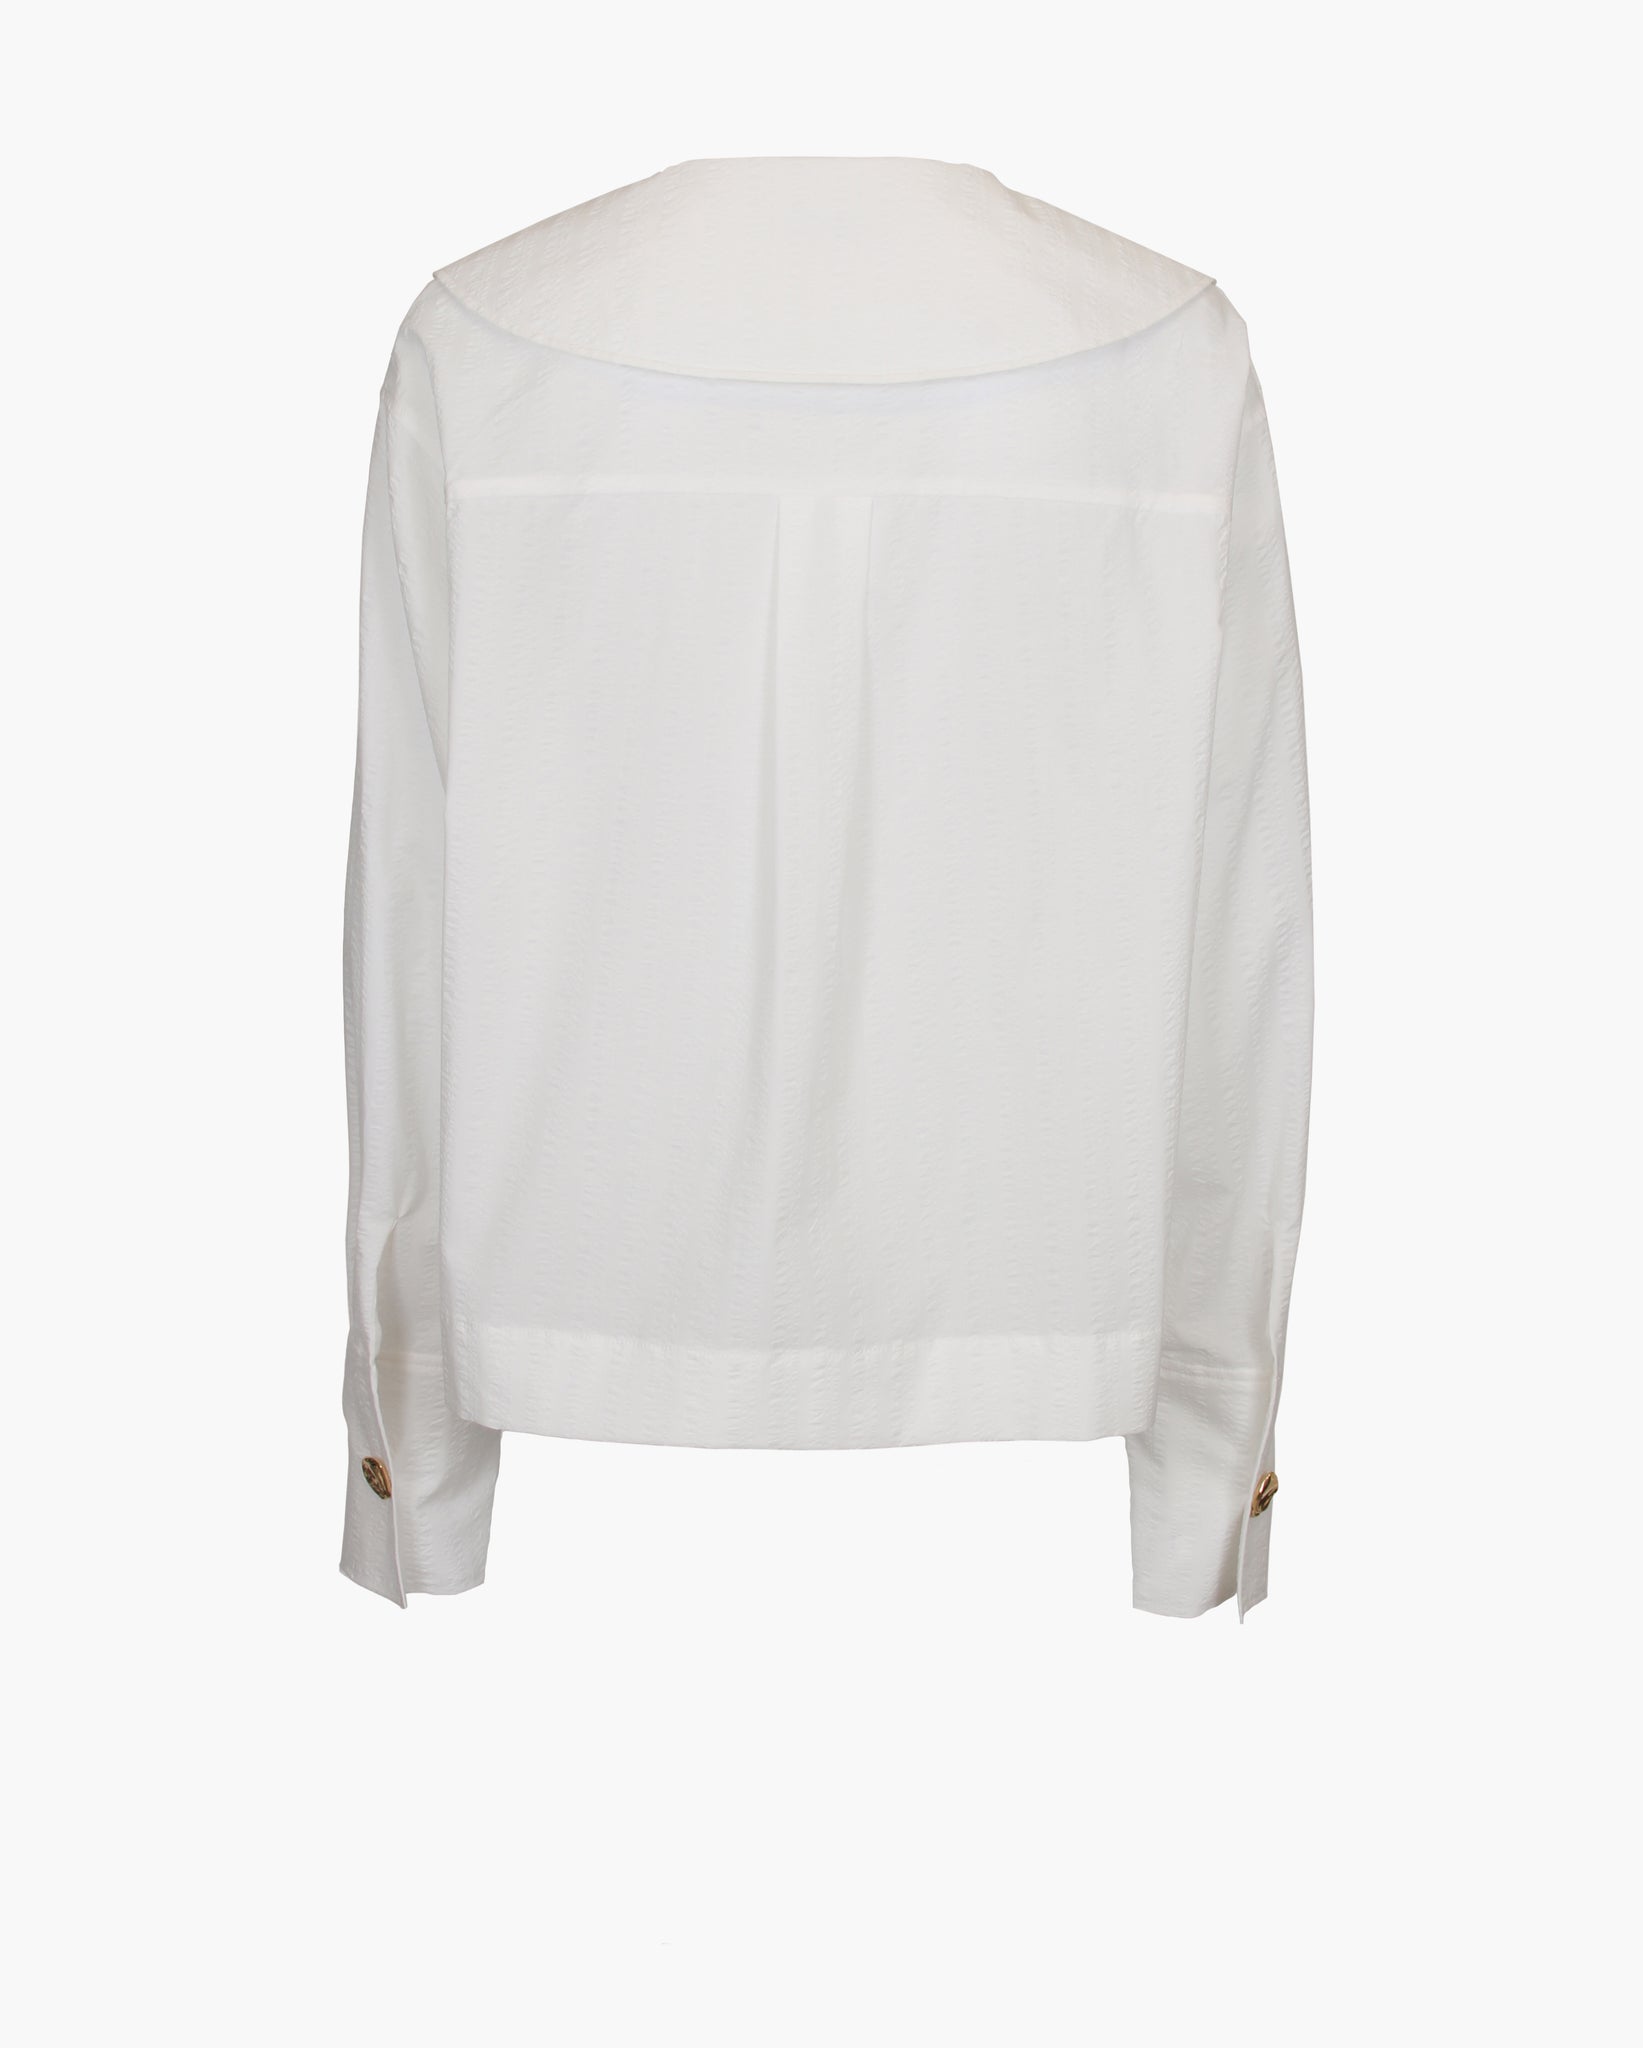 Elliot Shirt Cotton Seersucker Off-White